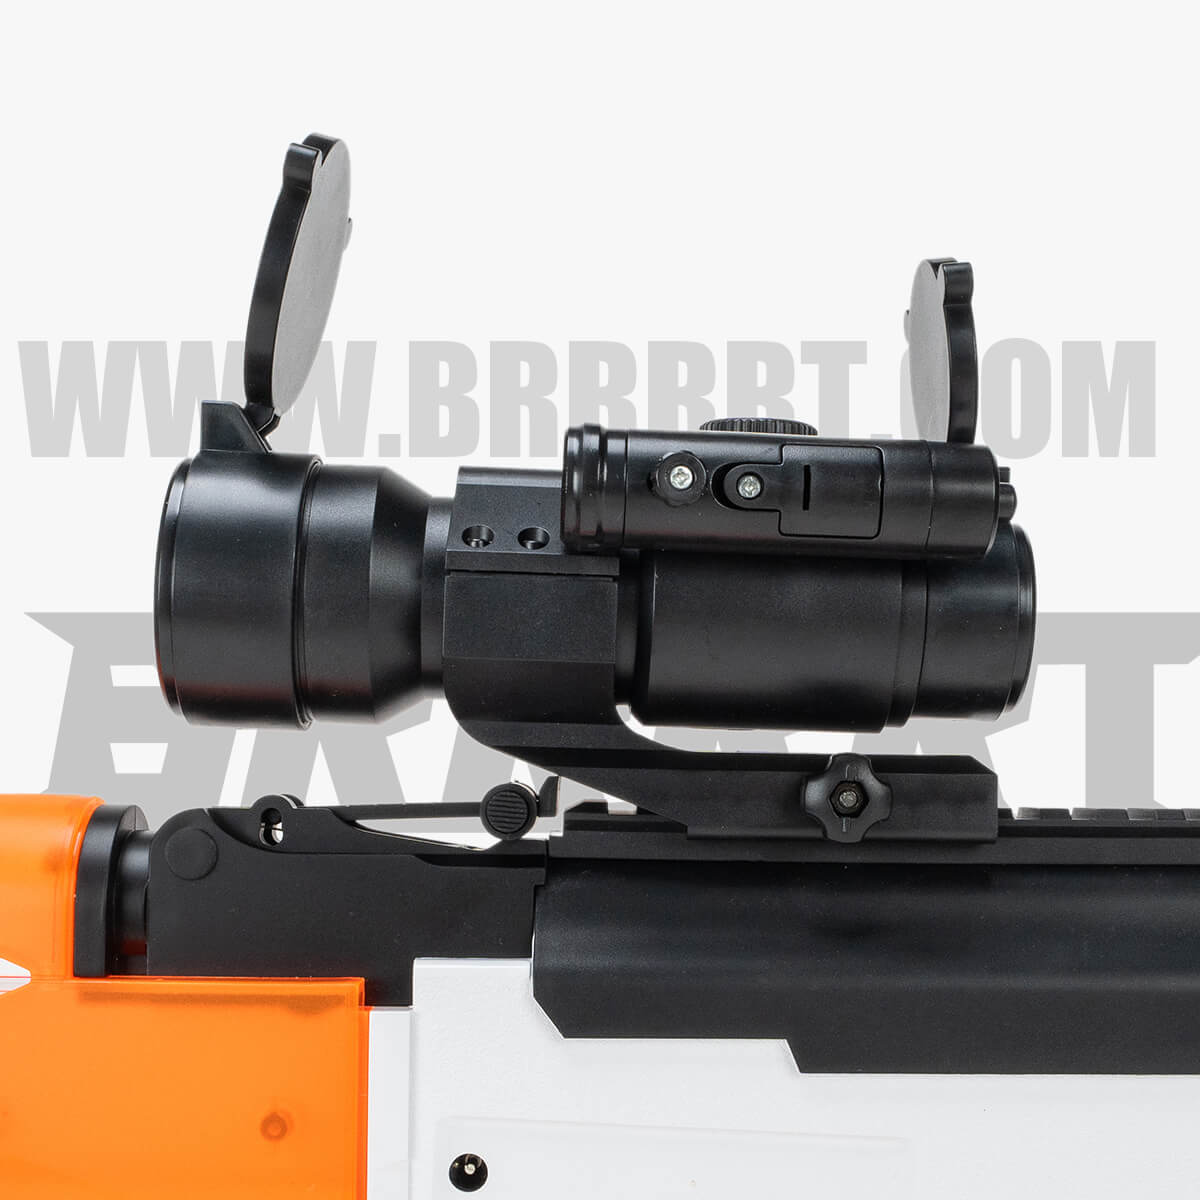 AKM 47 Splatter Ball Blaster